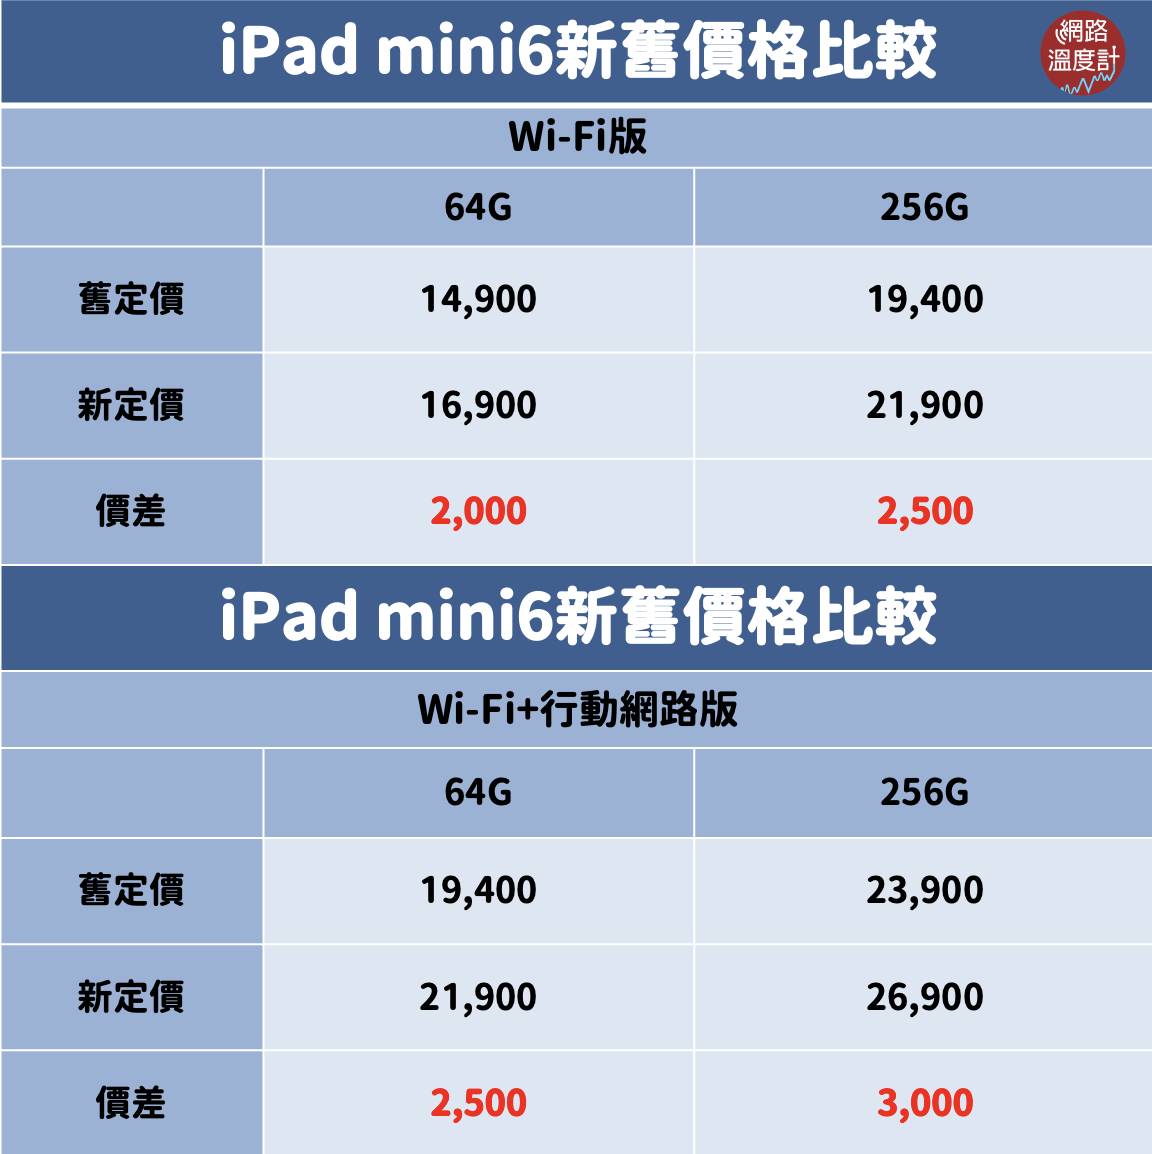 蘋果公司昨（18）日無預警在官網推出M2版iPad Pro、第10代iPad以及Apple TV 4K等新品，讓果粉們又驚又喜，不過目前尚未確定正式上市日期。雖然新產品規格、效能有提升，但價格方面也是「漲好漲滿」，M2版2TB的iPad Pro比前一代貴了7,650元，舊款iPad也默默被調漲，讓許多人怒批根本是「早買早享受，晚買割韭菜」。快跟著小編一起來看看這次的售價漲幅懶人包吧！